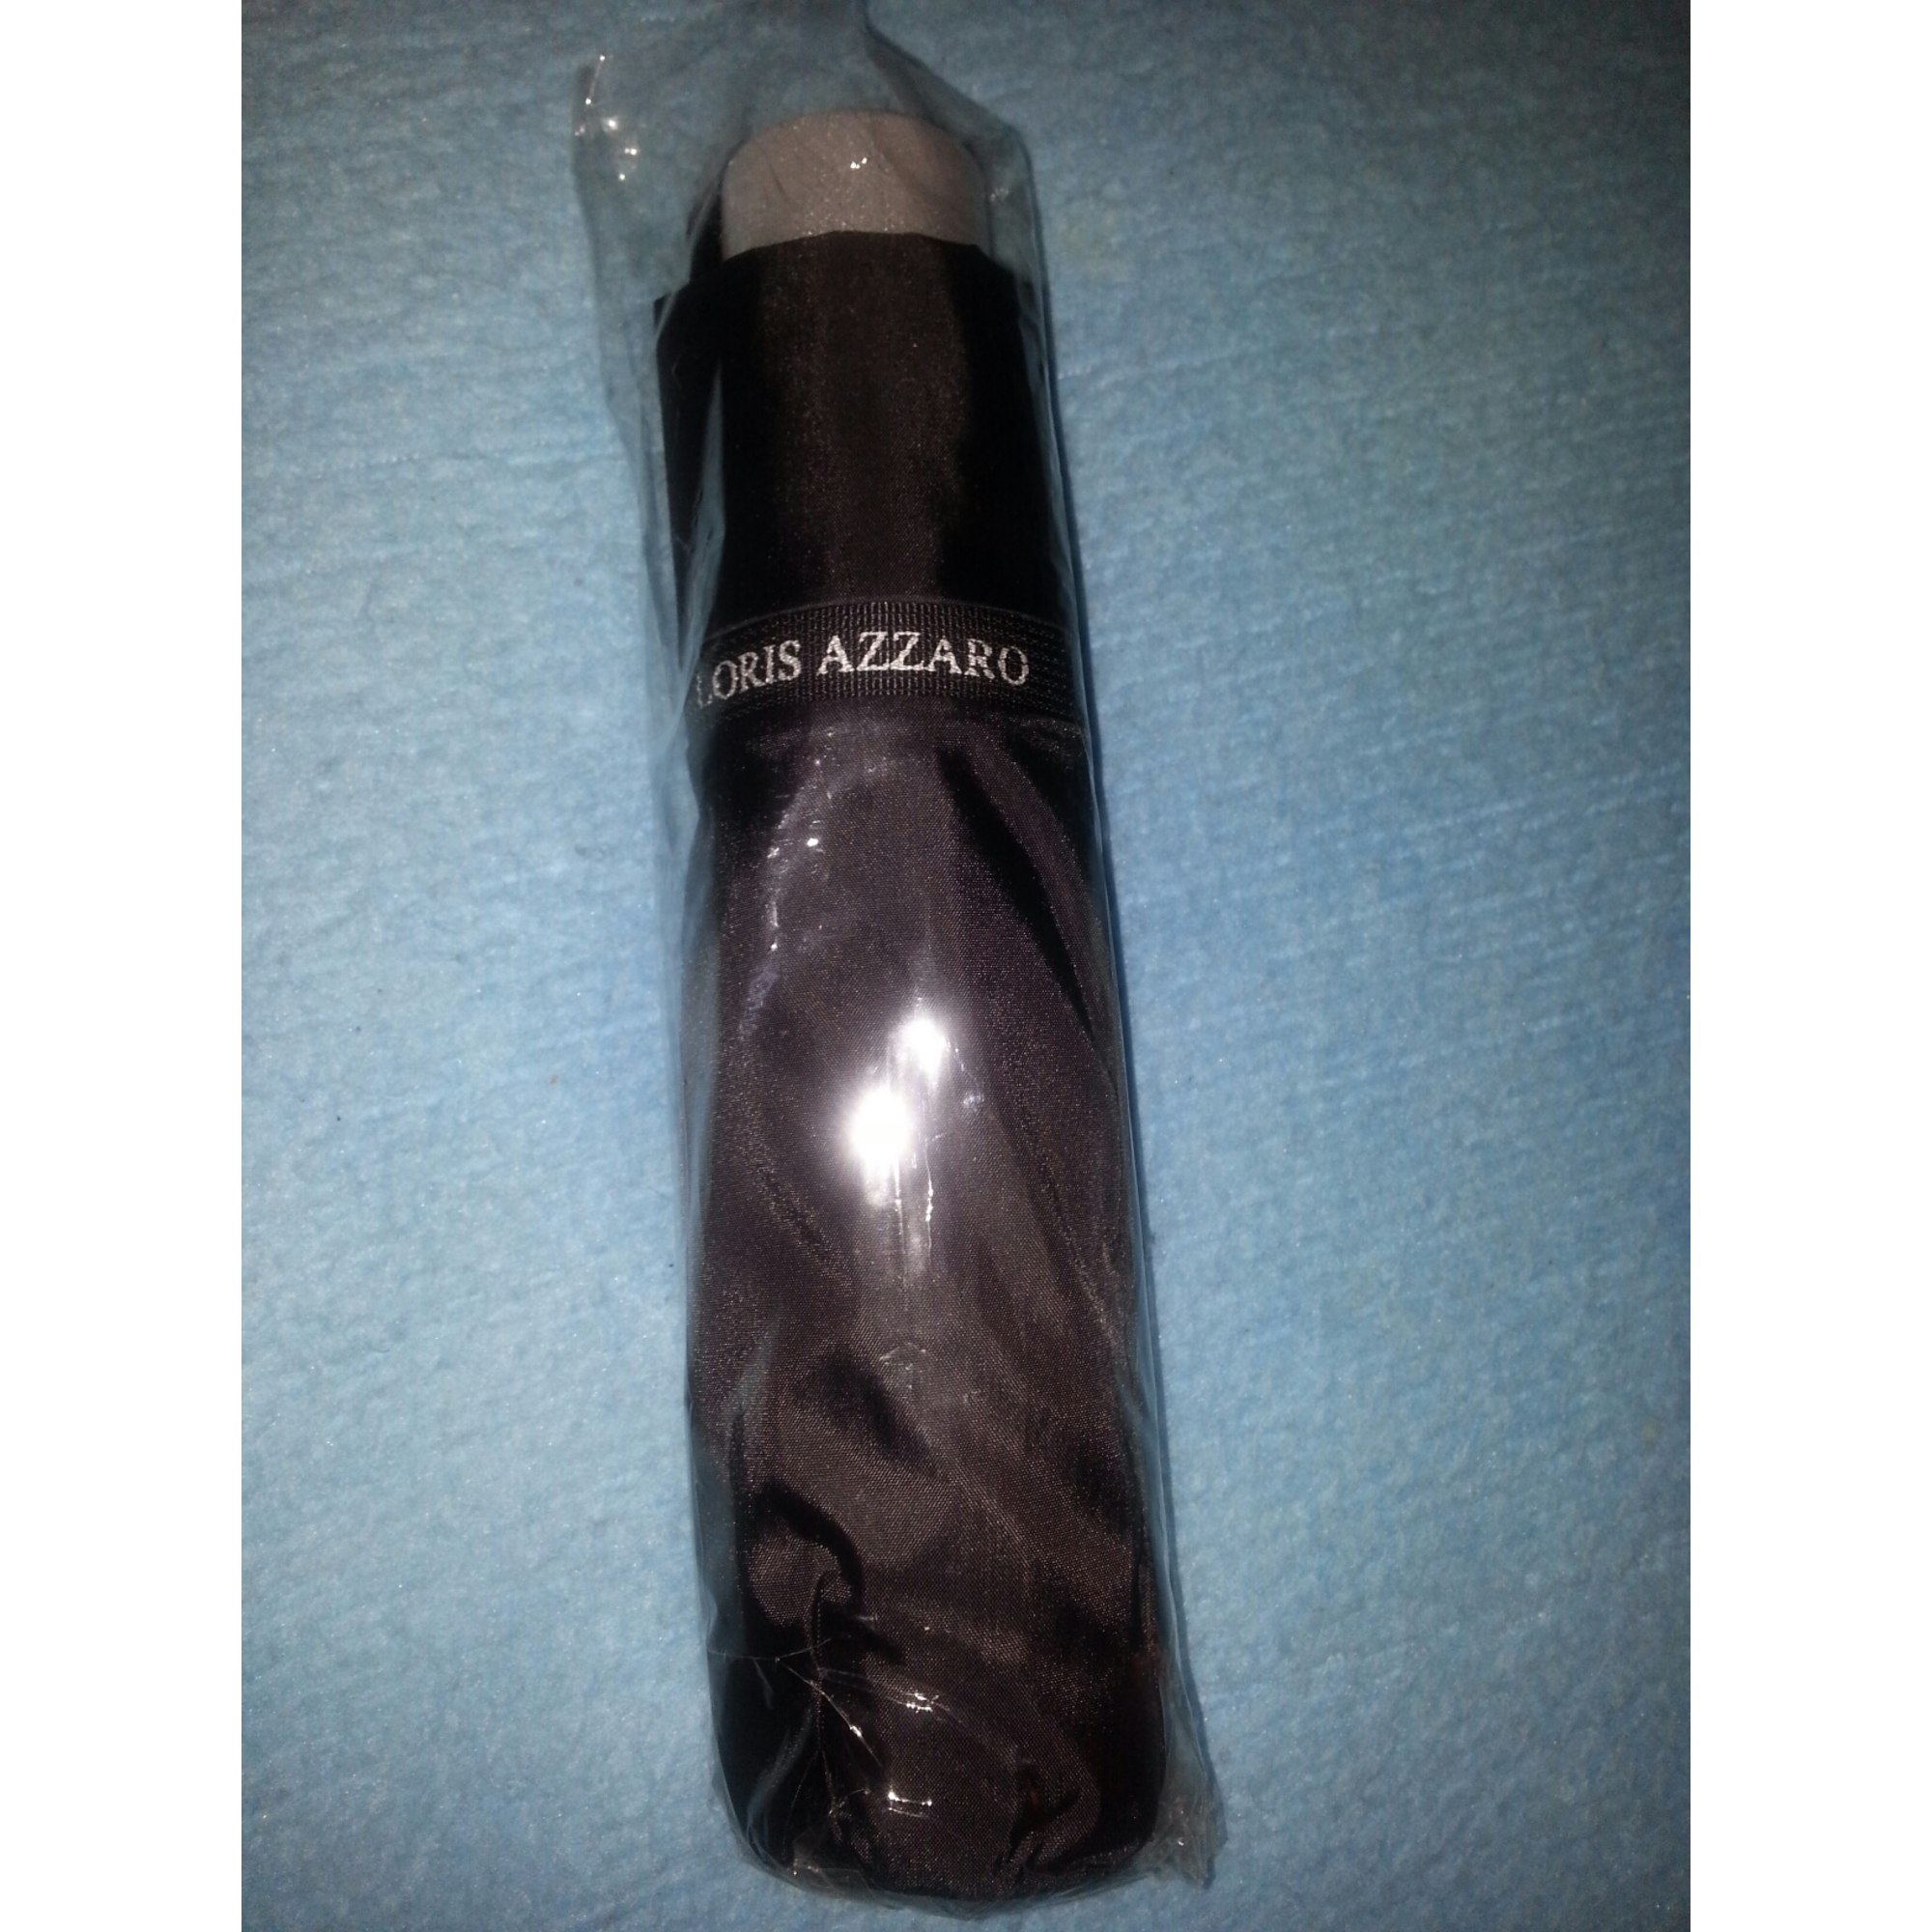 Chapeau AZZARO Taille unique argenté vendu par Missweb0677294 - 2318331